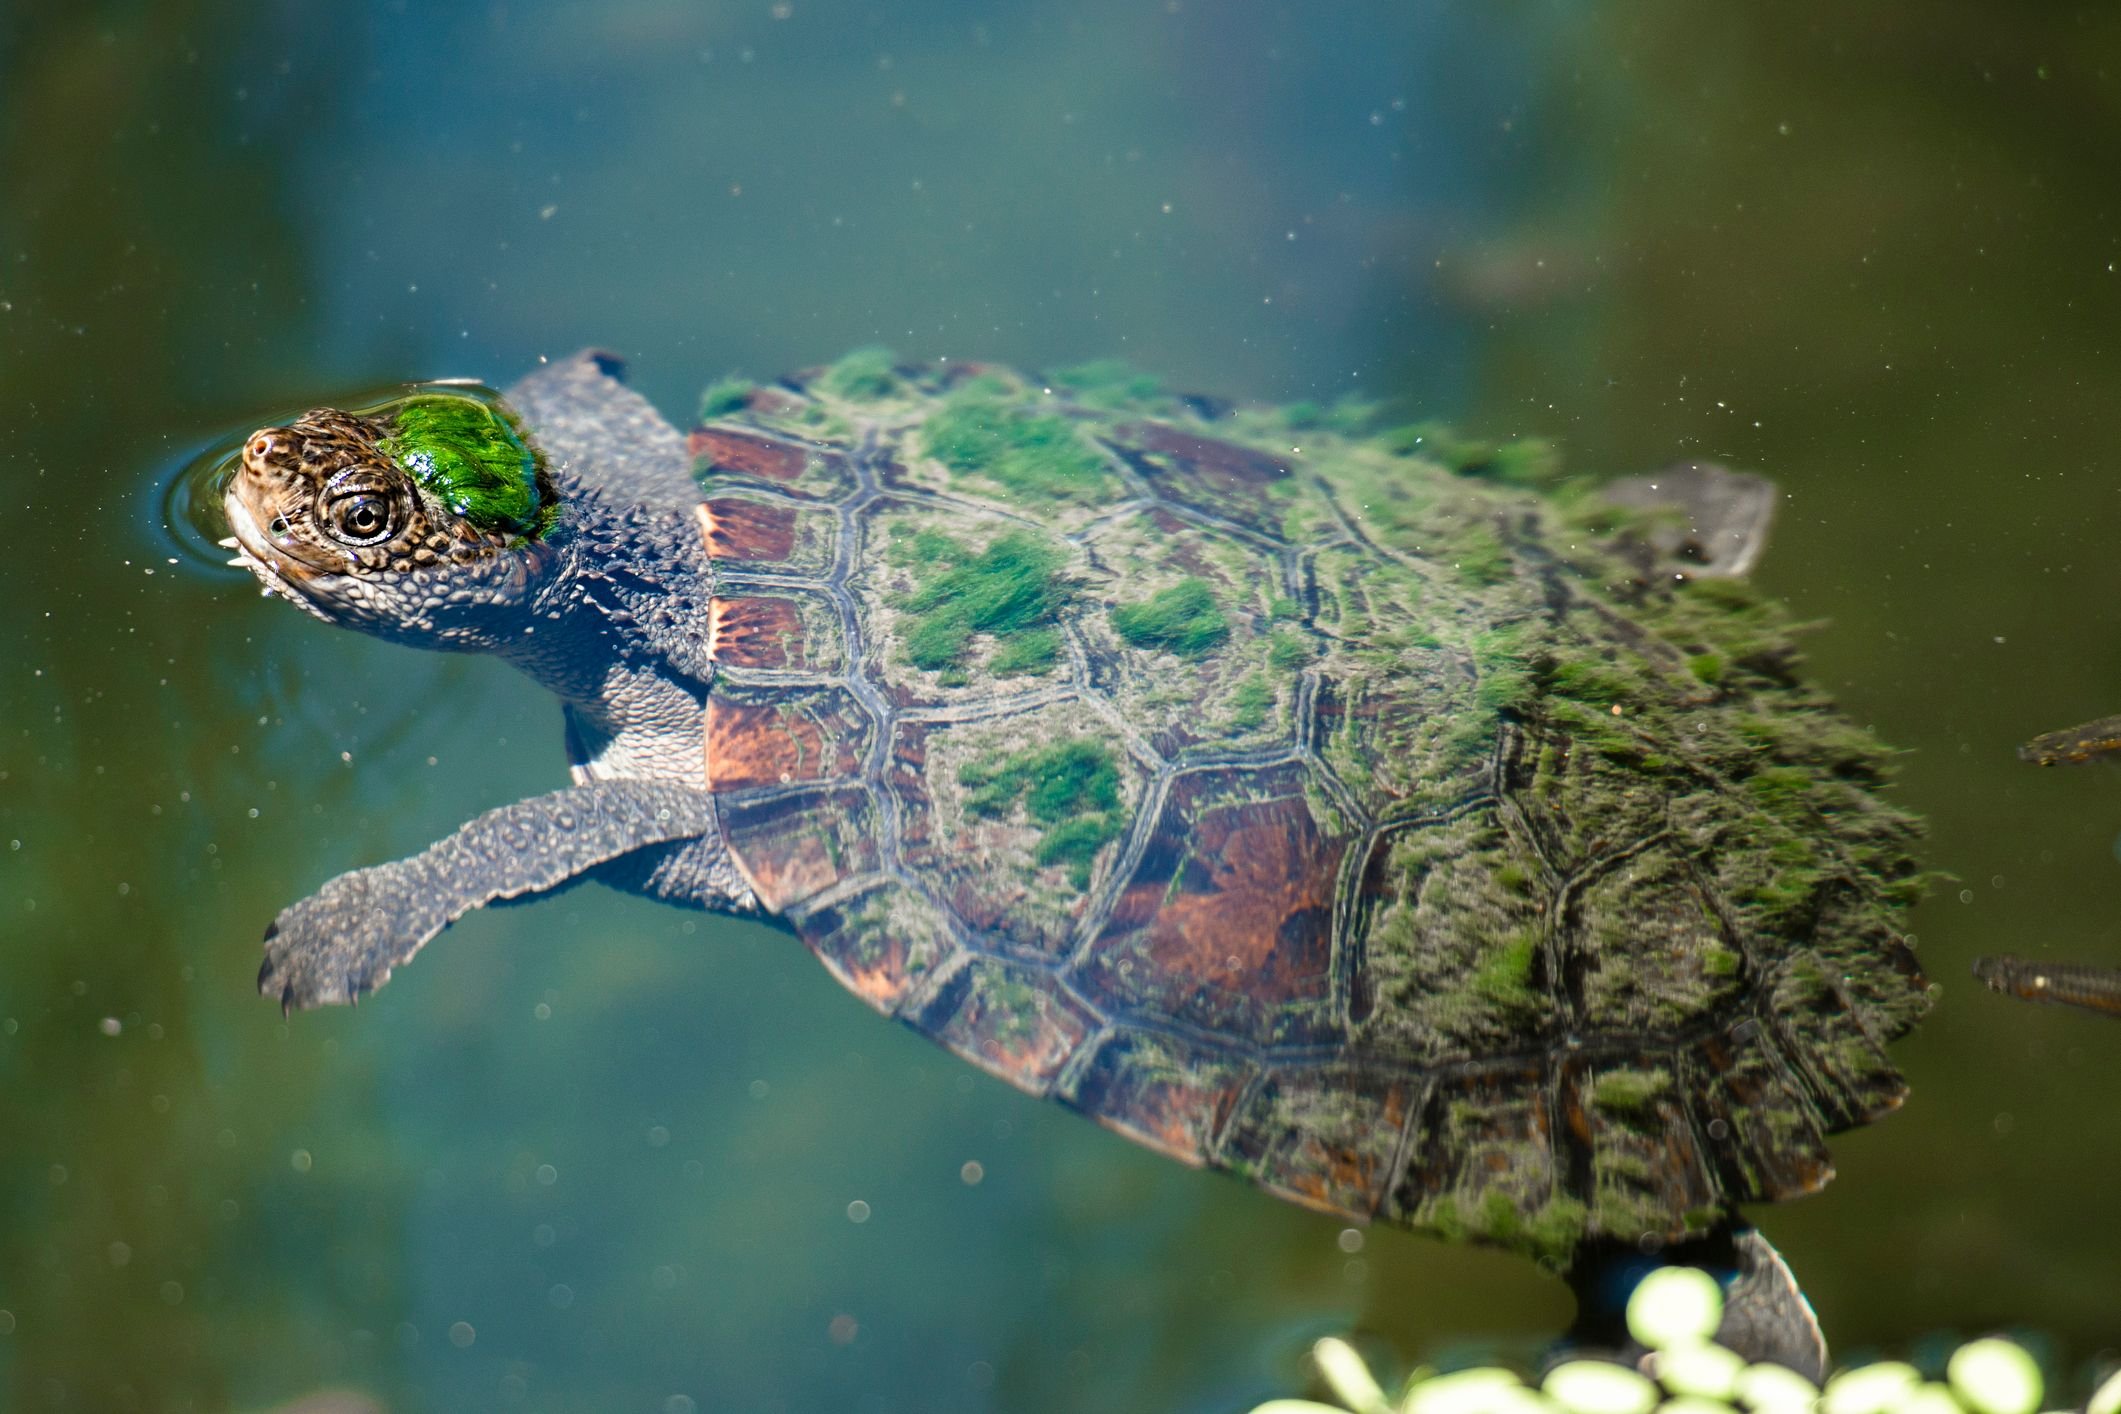 mary-river-a-tartaruga-punk-que-respira-pelos-orgaos-reprodutores-thumb.png